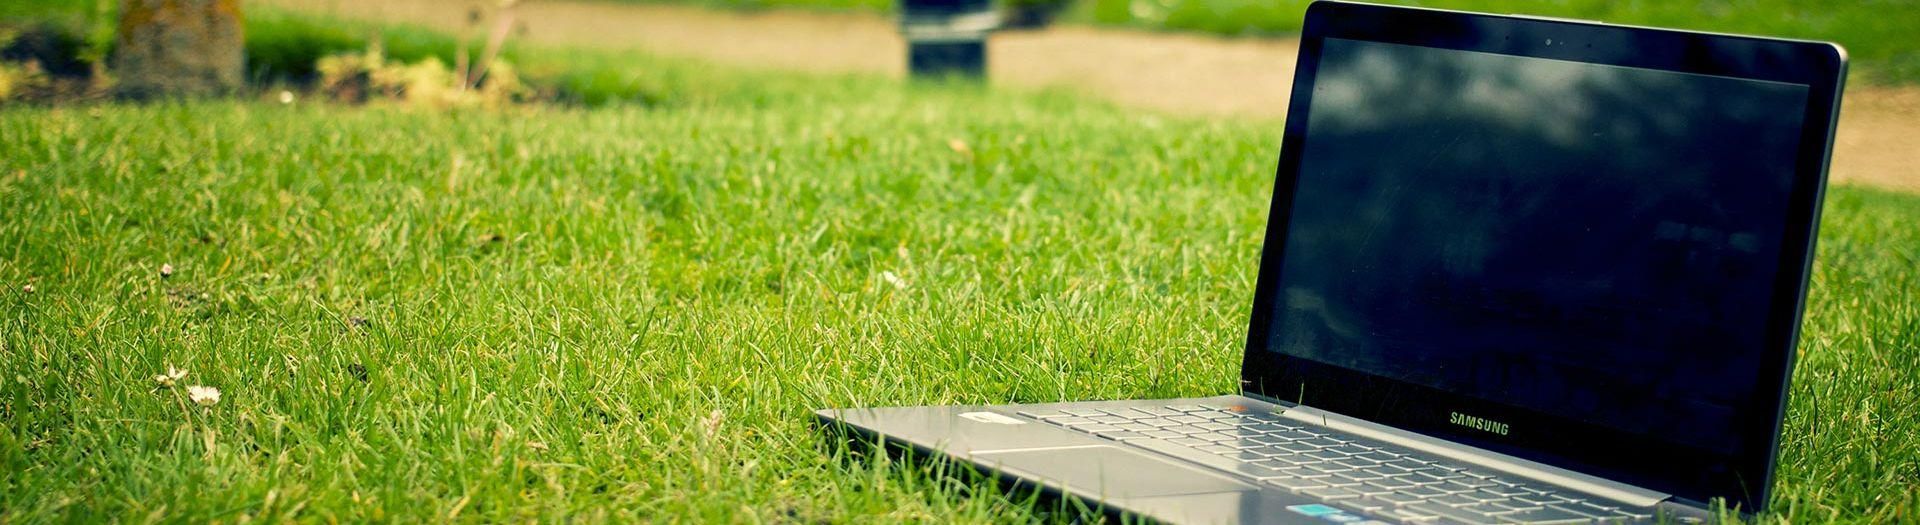 laptop-notebook-grass-meadow-9b558d75 Custom | BRIGHT Software B.V.